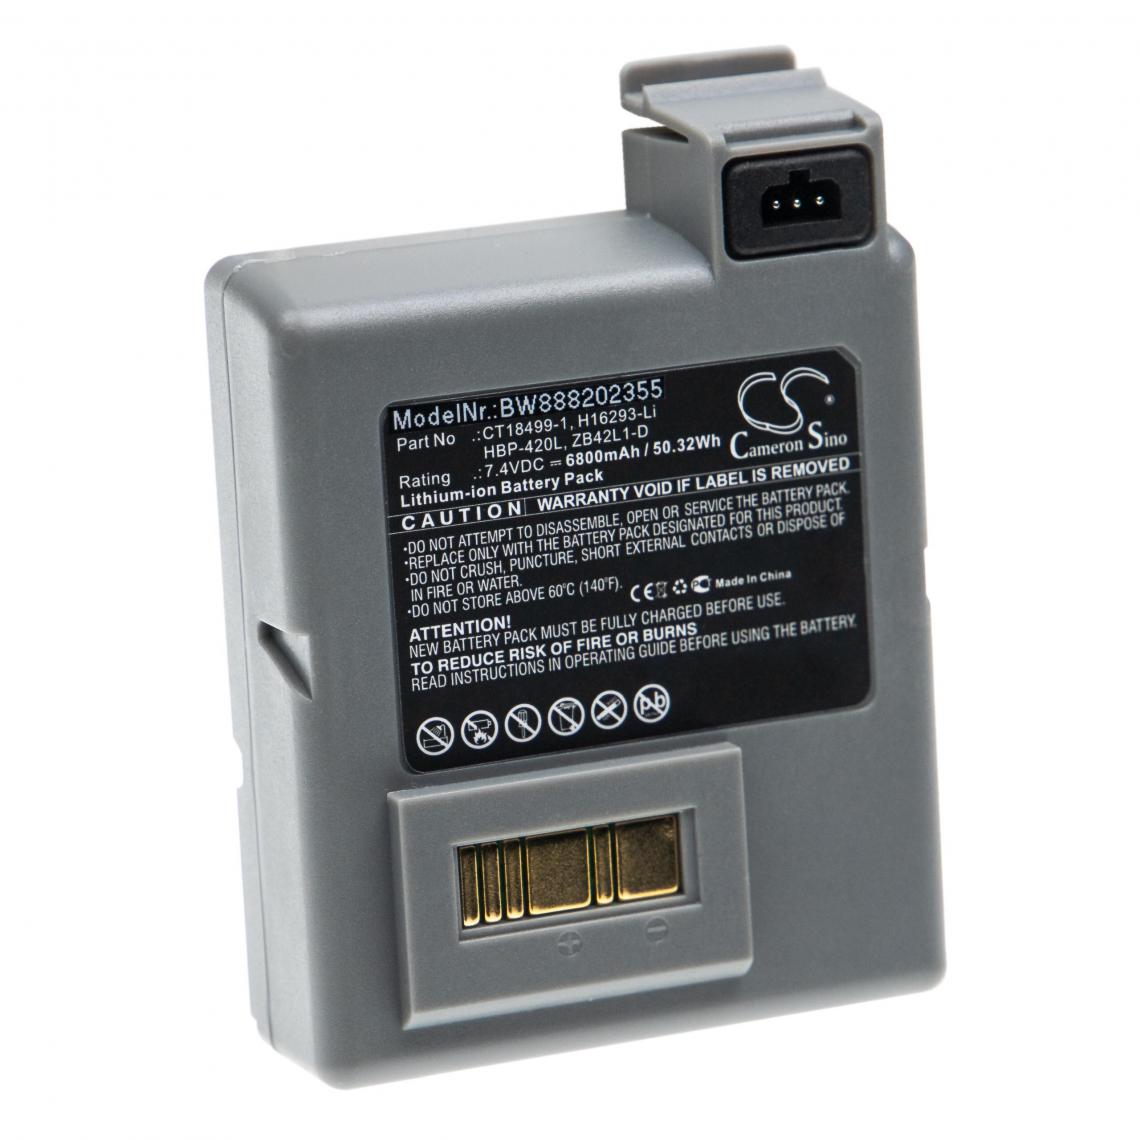 Vhbw - vhbw Batterie remplacement pour Zebra CT18499-1, H16293-Li pour imprimante, scanner, imprimante d'étiquettes (6800mAh, 7,4V, Li-ion) - Caméras Sportives